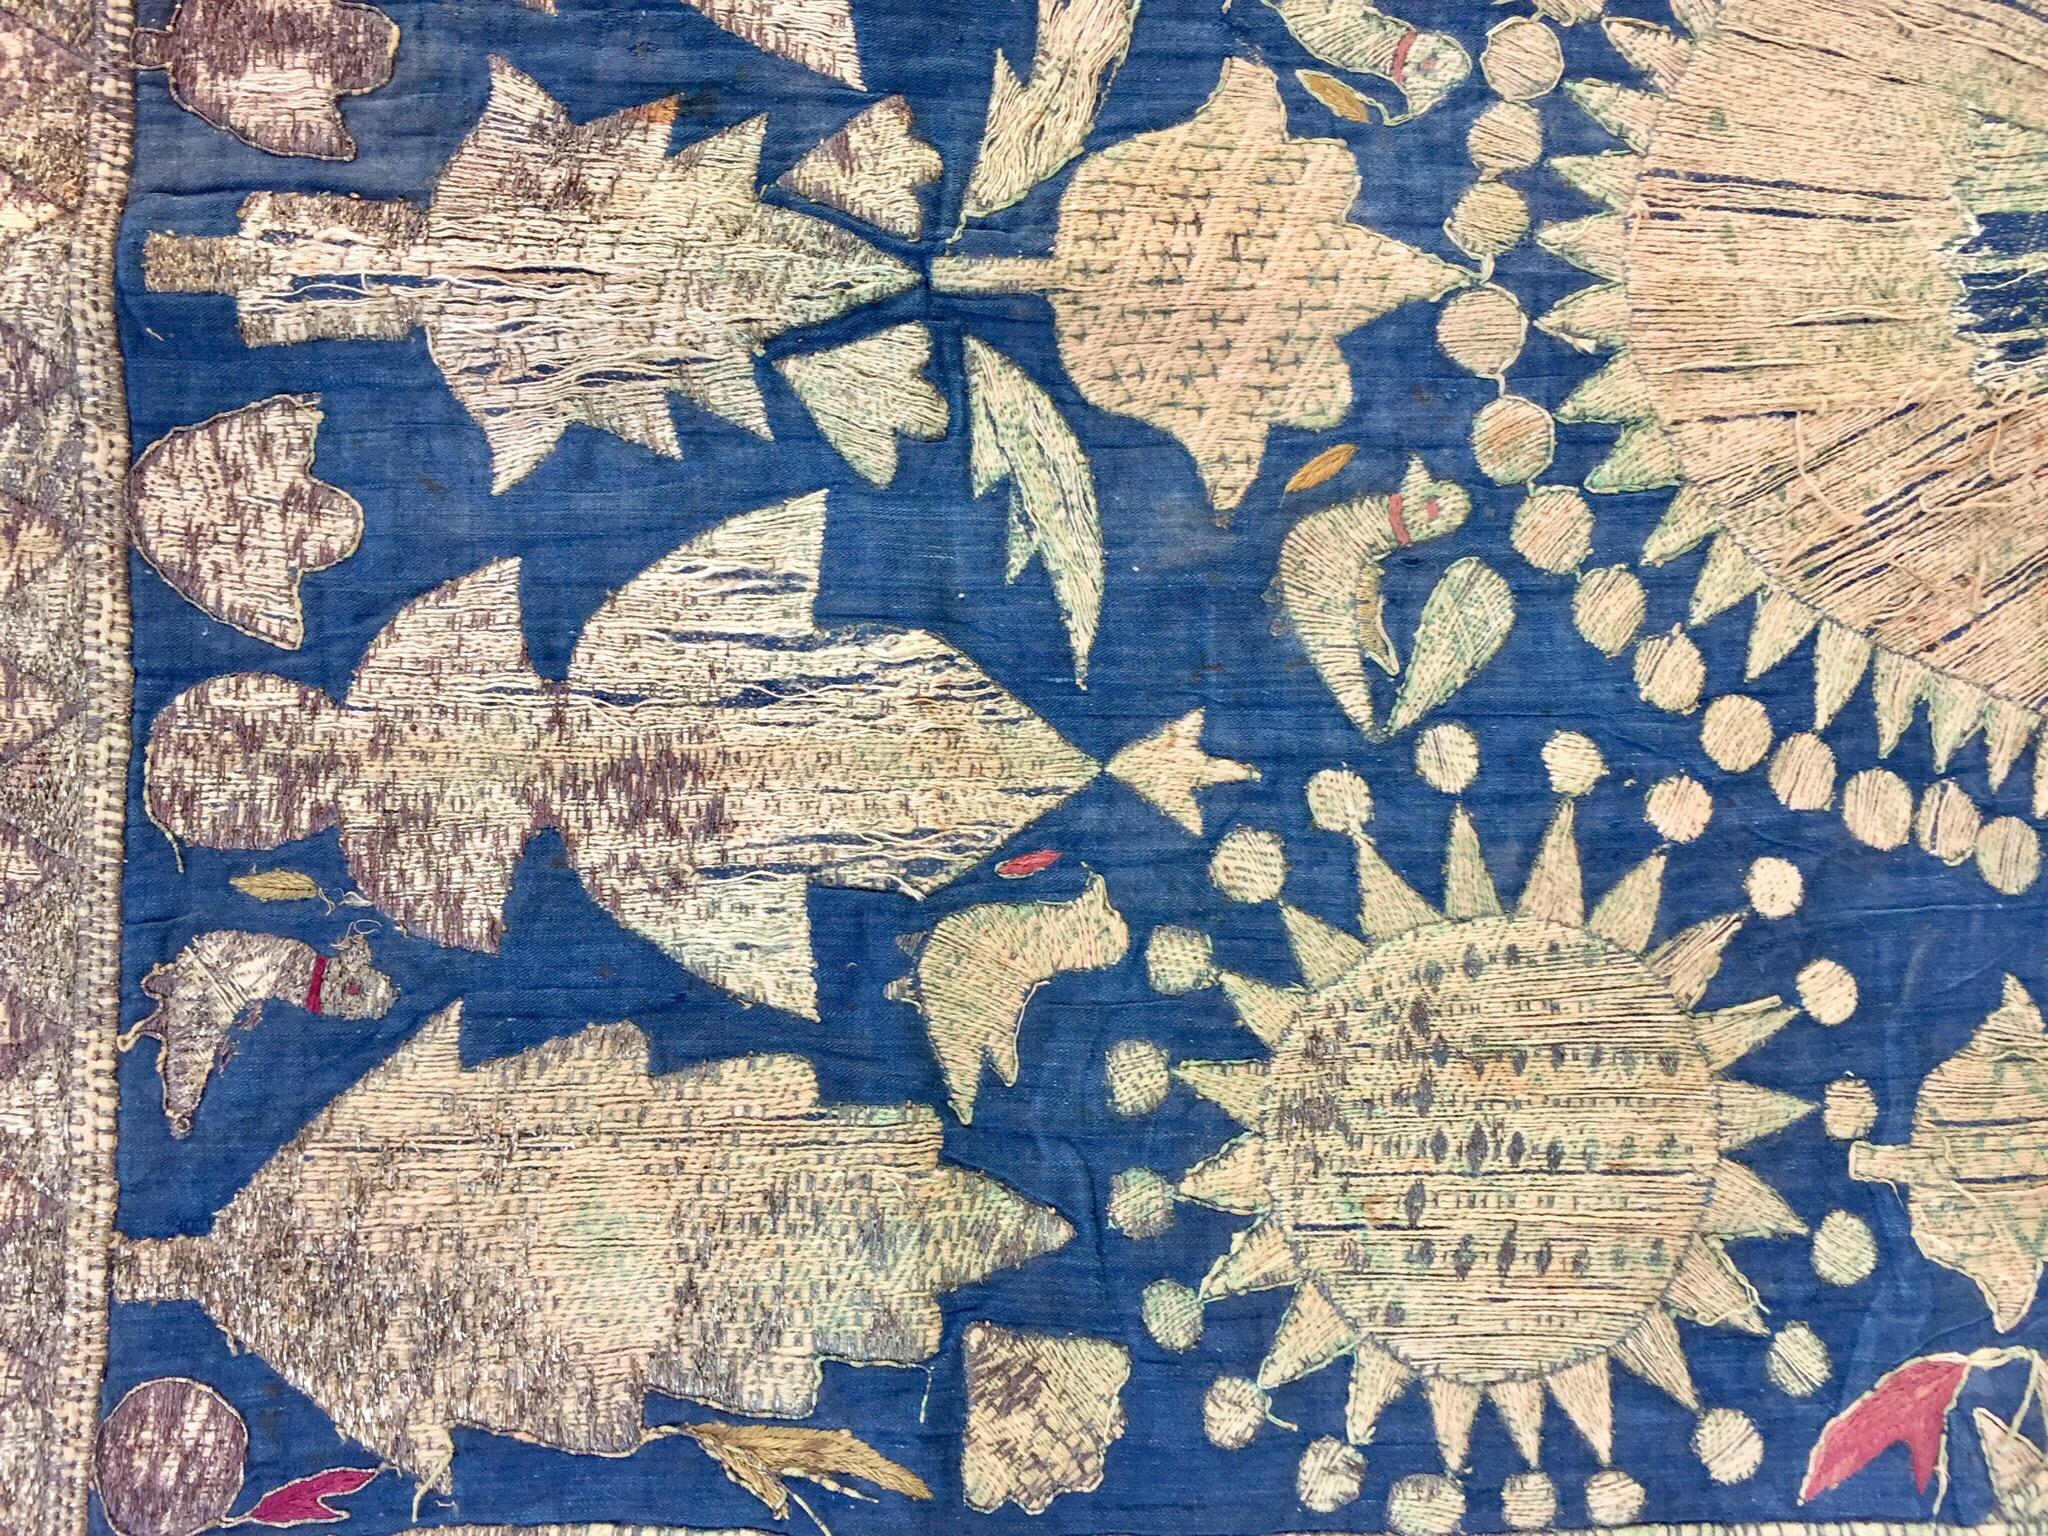 19th Century Moorish Islamic Ottoman Empire Textile Metallic Embroidered 3